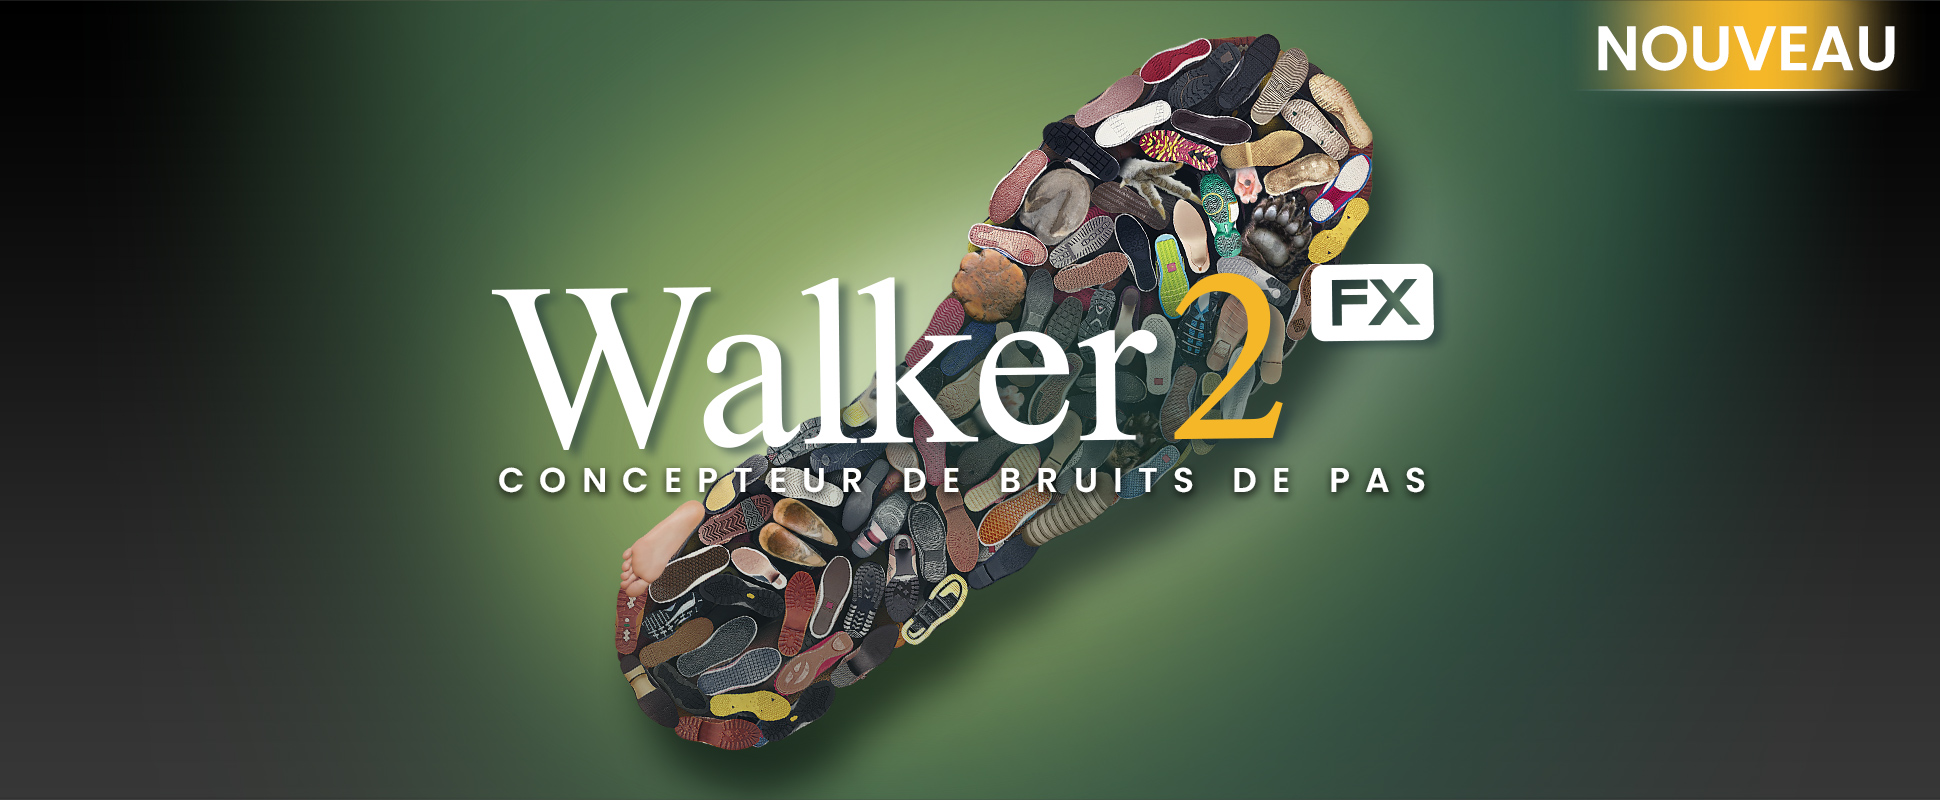 Introducing Walker 2